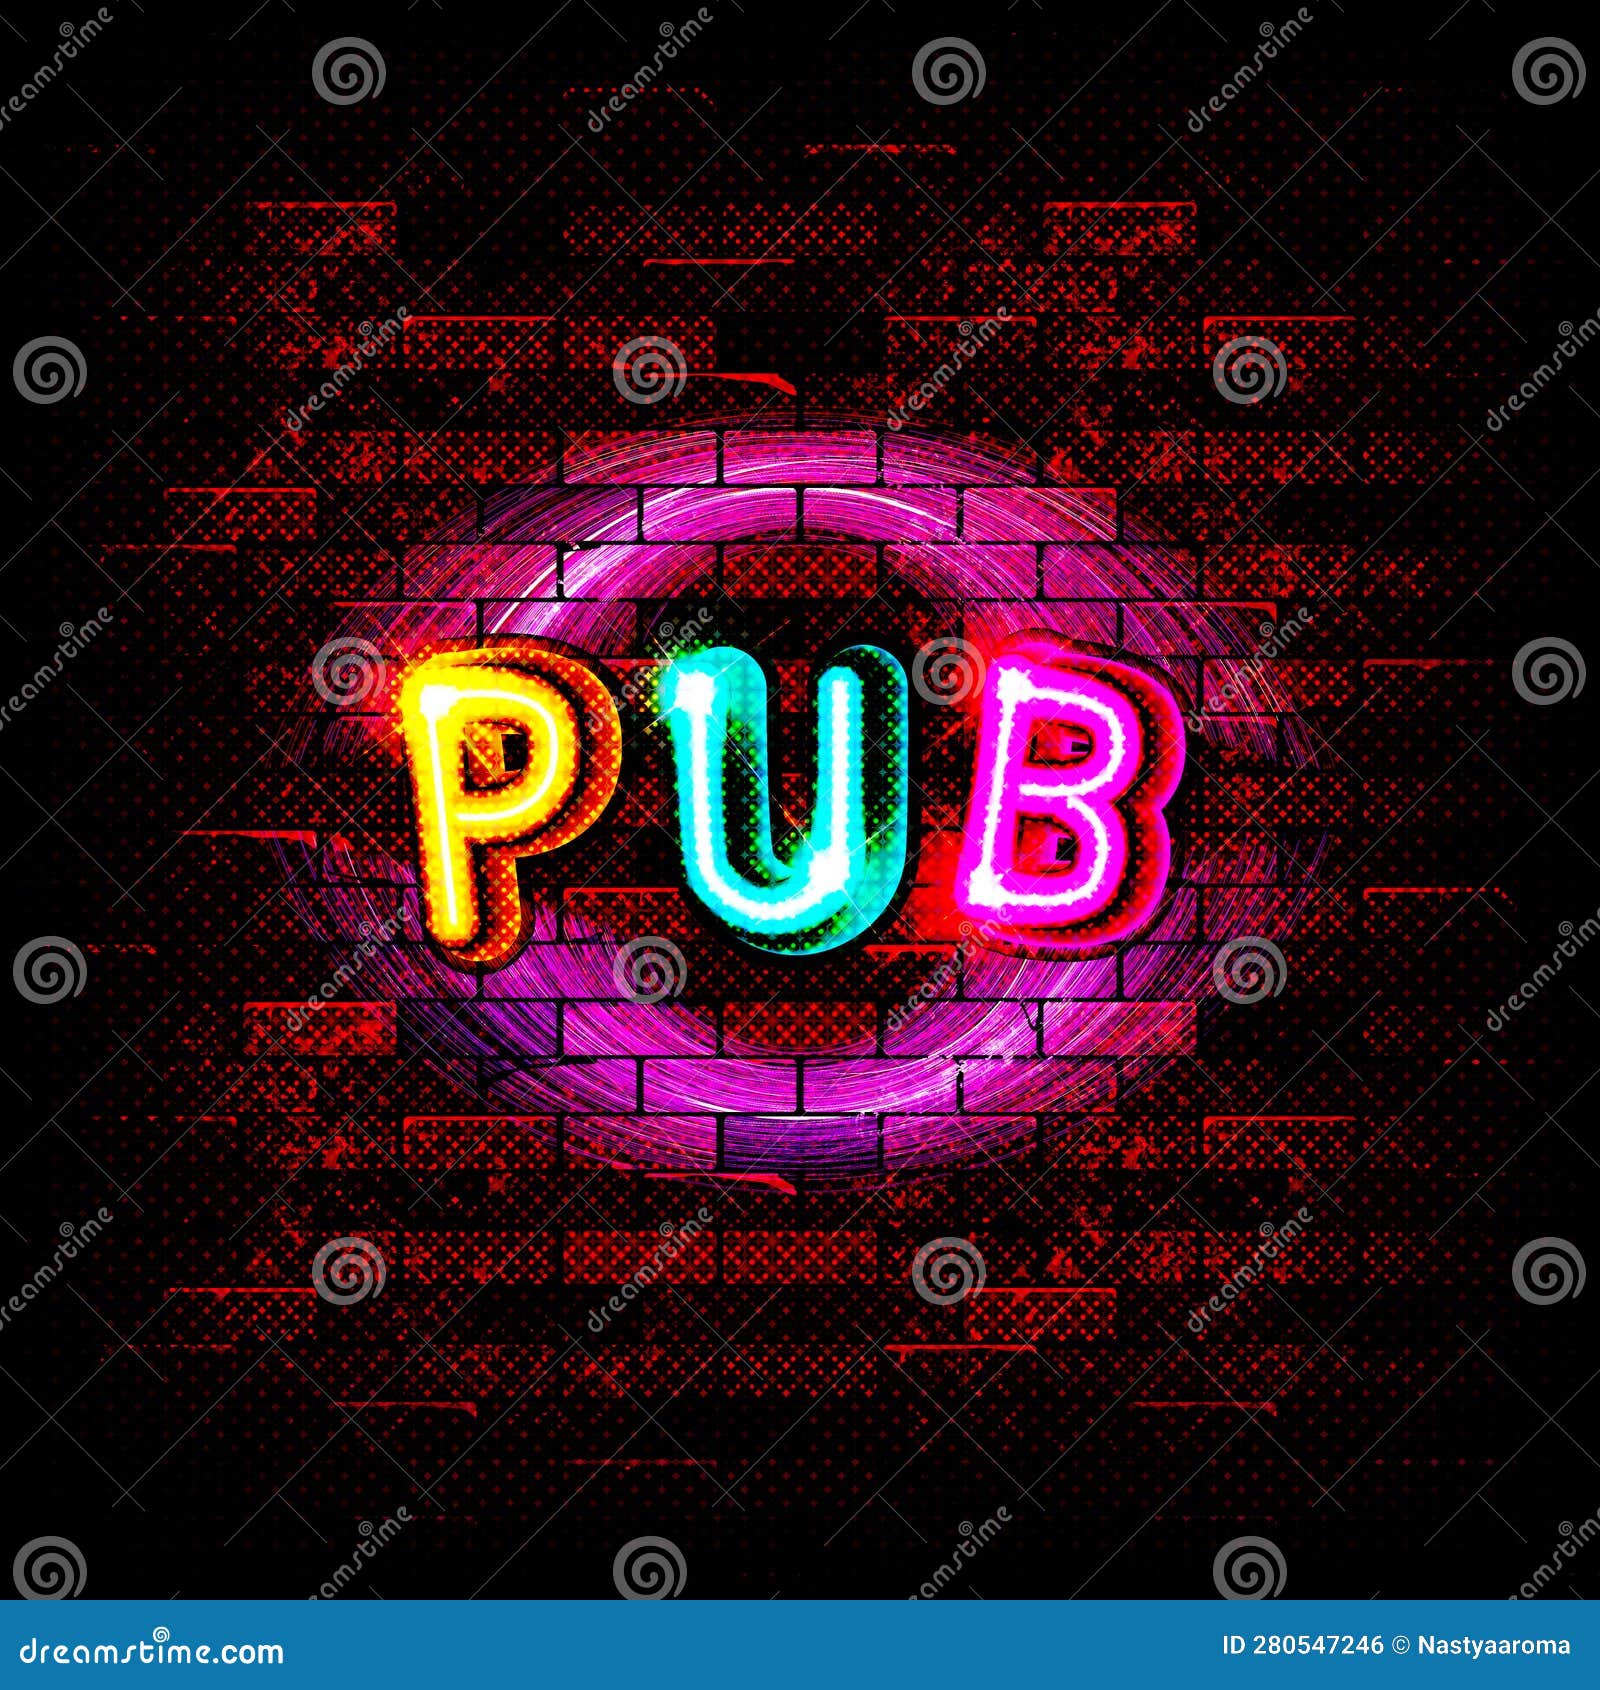 pub quiz neon signs